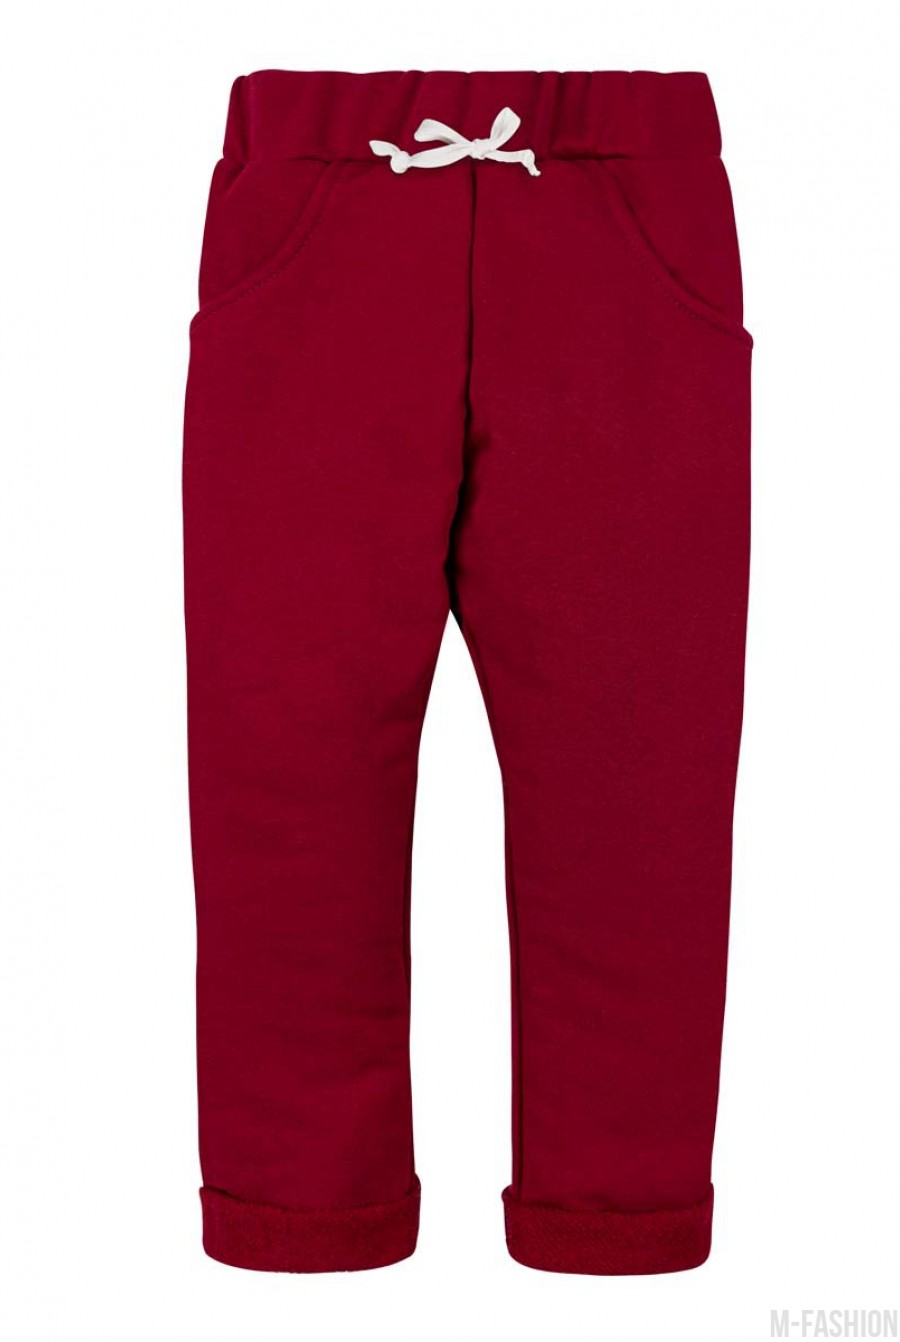 Красные штаны из футера на резинке, с карманами и подворотами - Фото 1